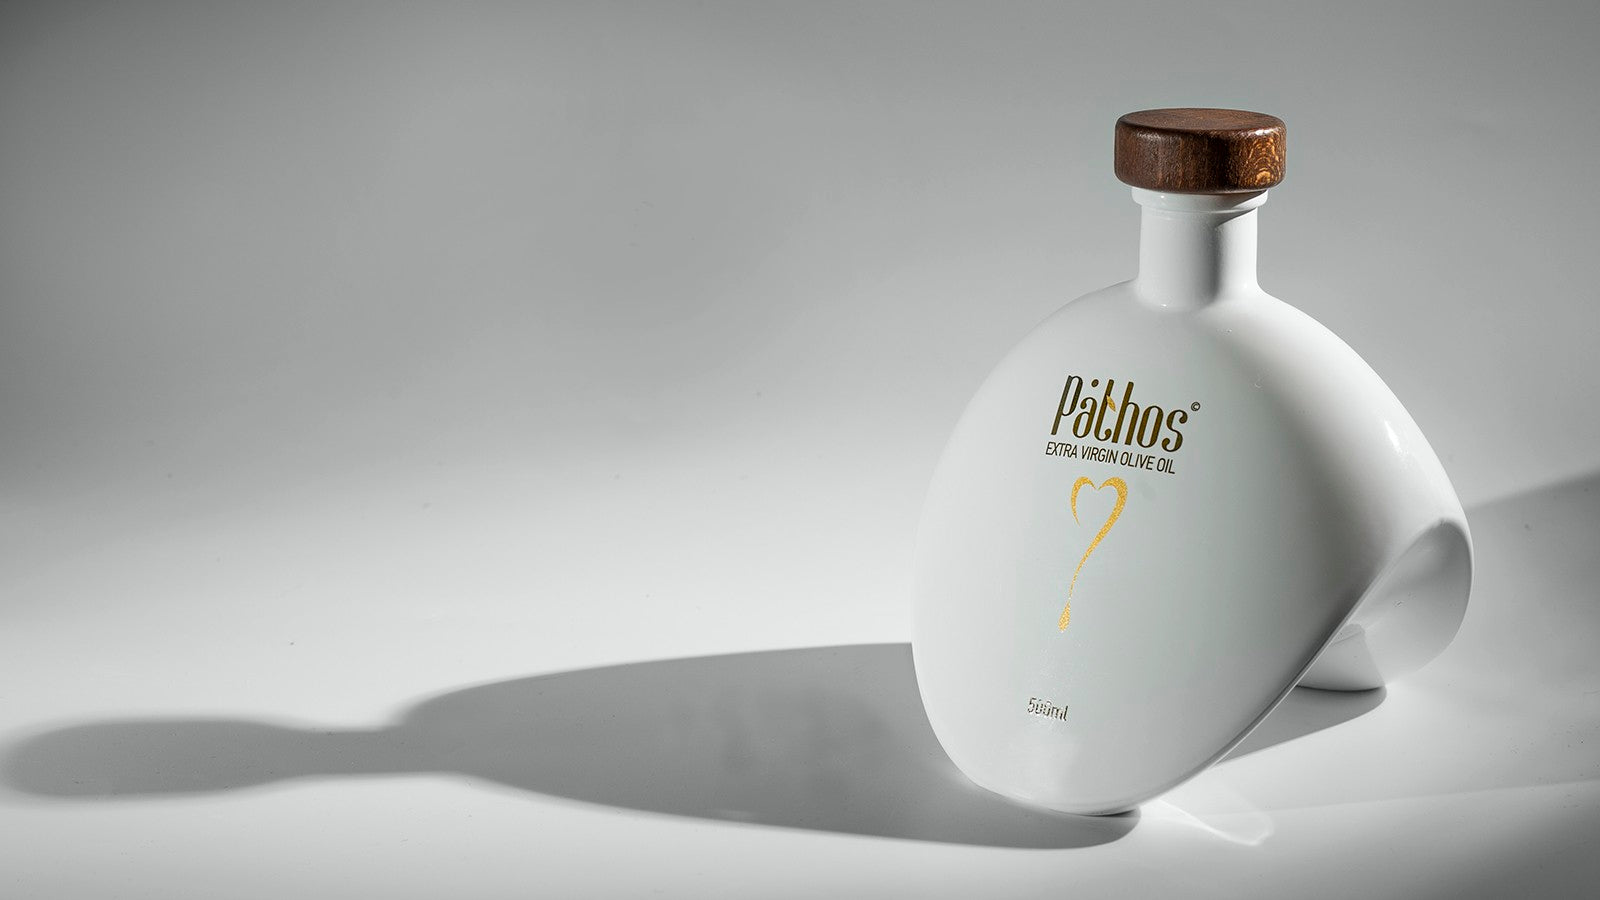 Pathos- Premium Extra Virgin Olive Oil